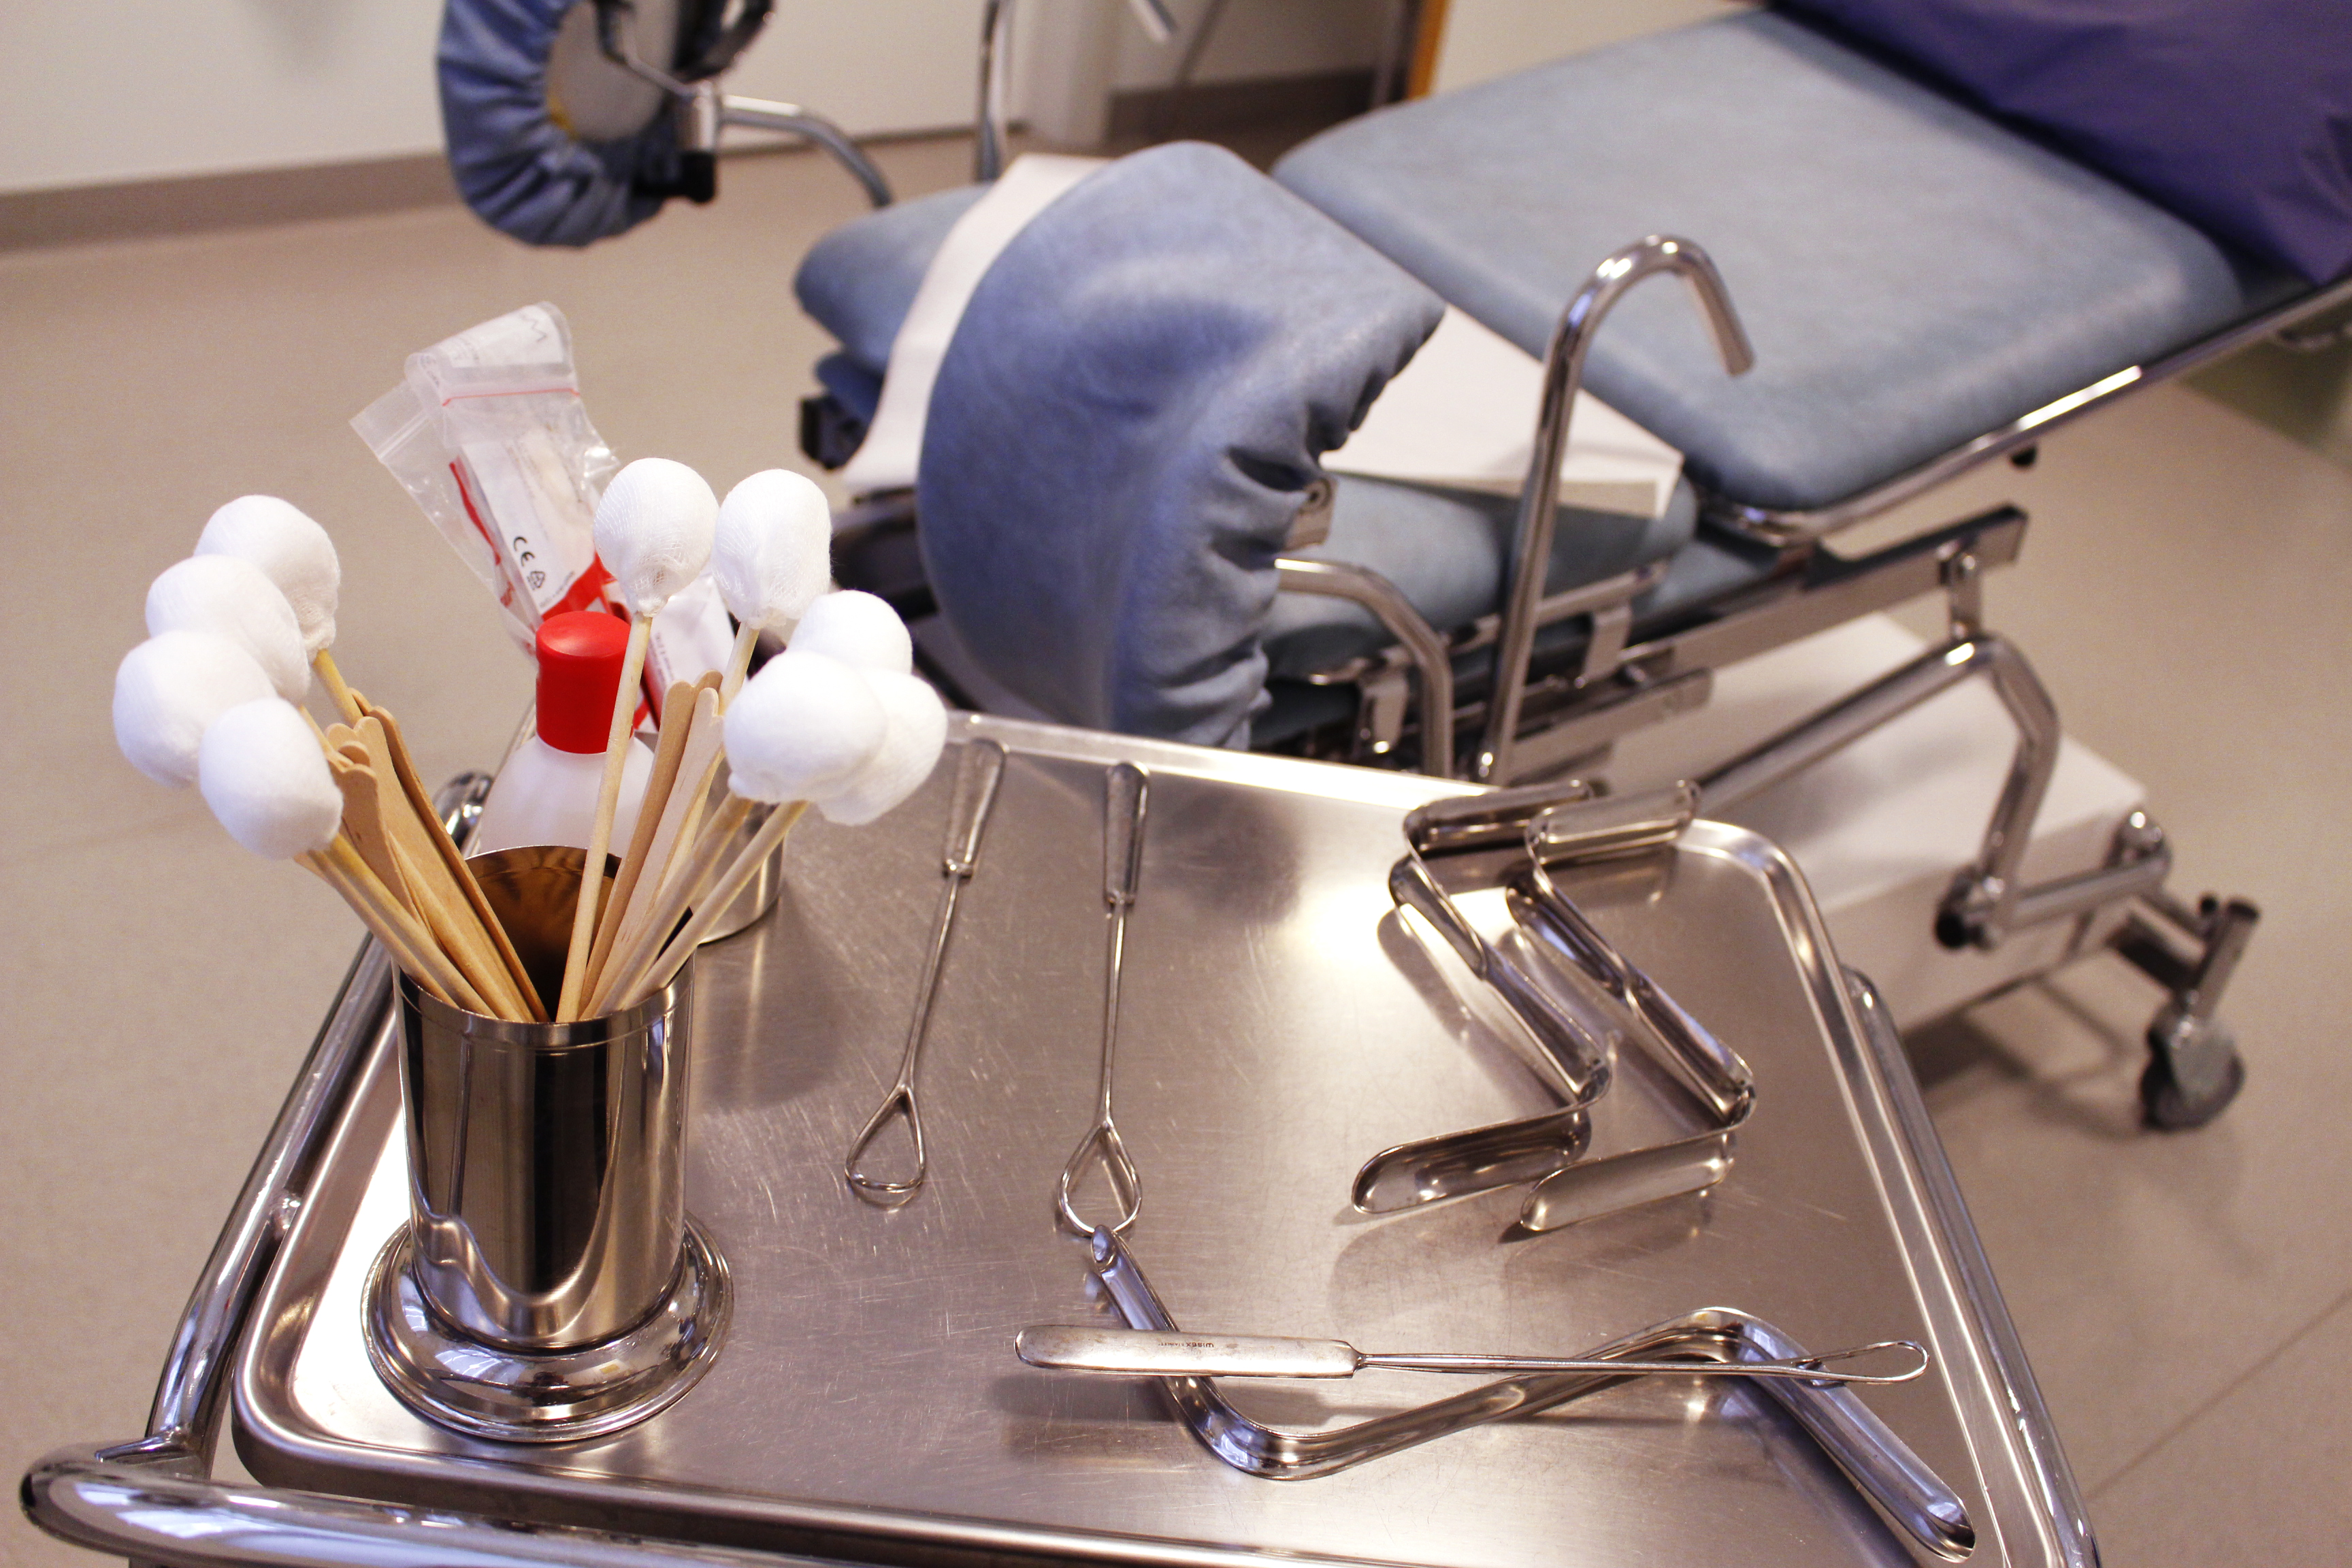 Bilden visar en gynekologisk stol med instrument för provtagning